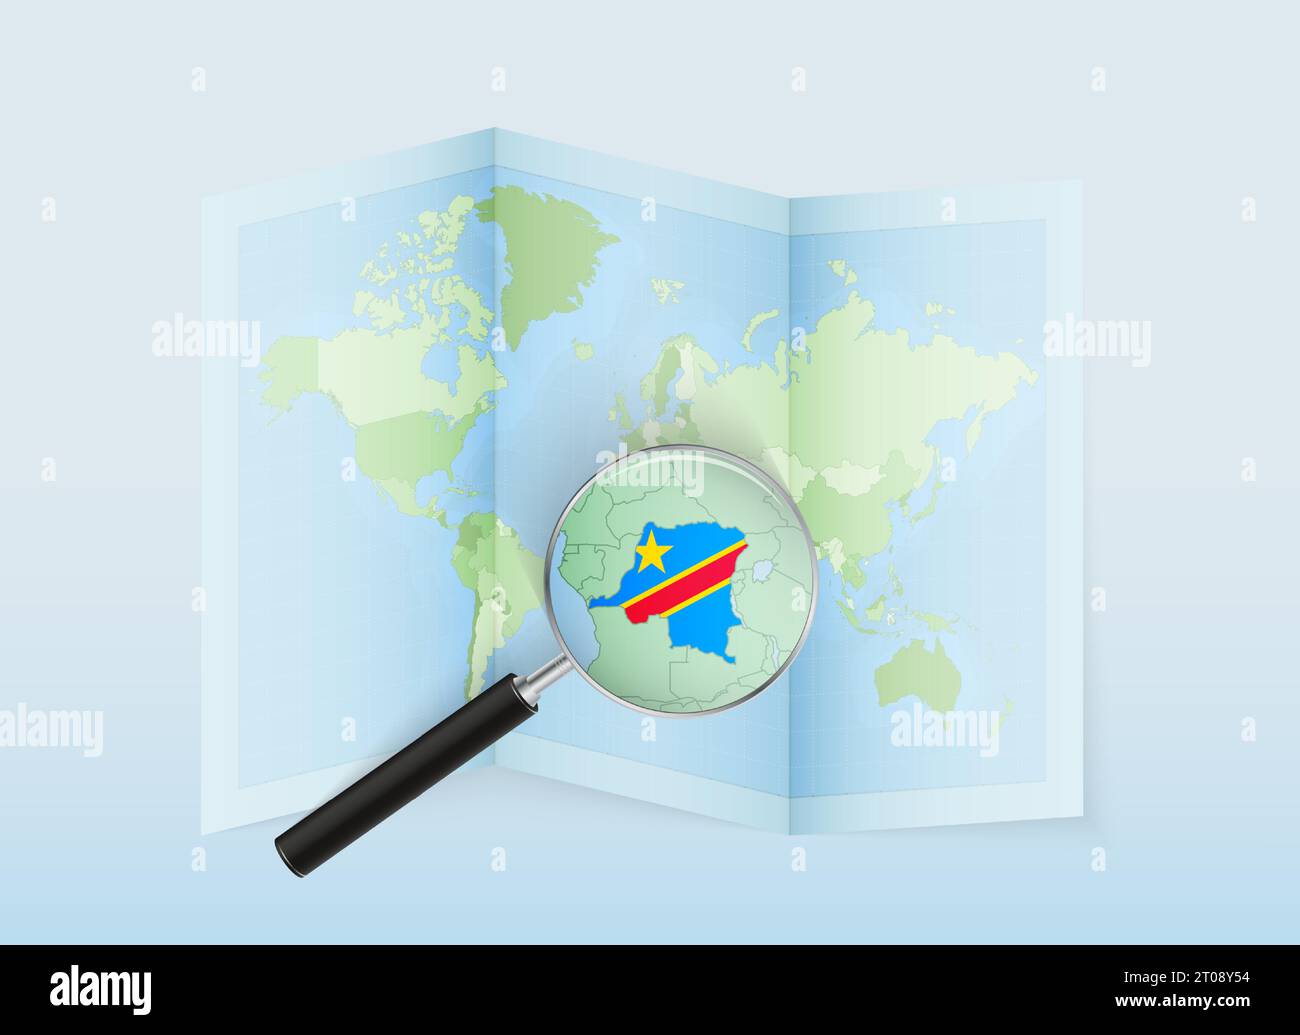 Une carte du monde pliée avec une loupe pointant vers la RD Congo. Carte et drapeau de l'Italie en loupe. Illustration vectorielle dans le ton de couleur bleue. Illustration de Vecteur